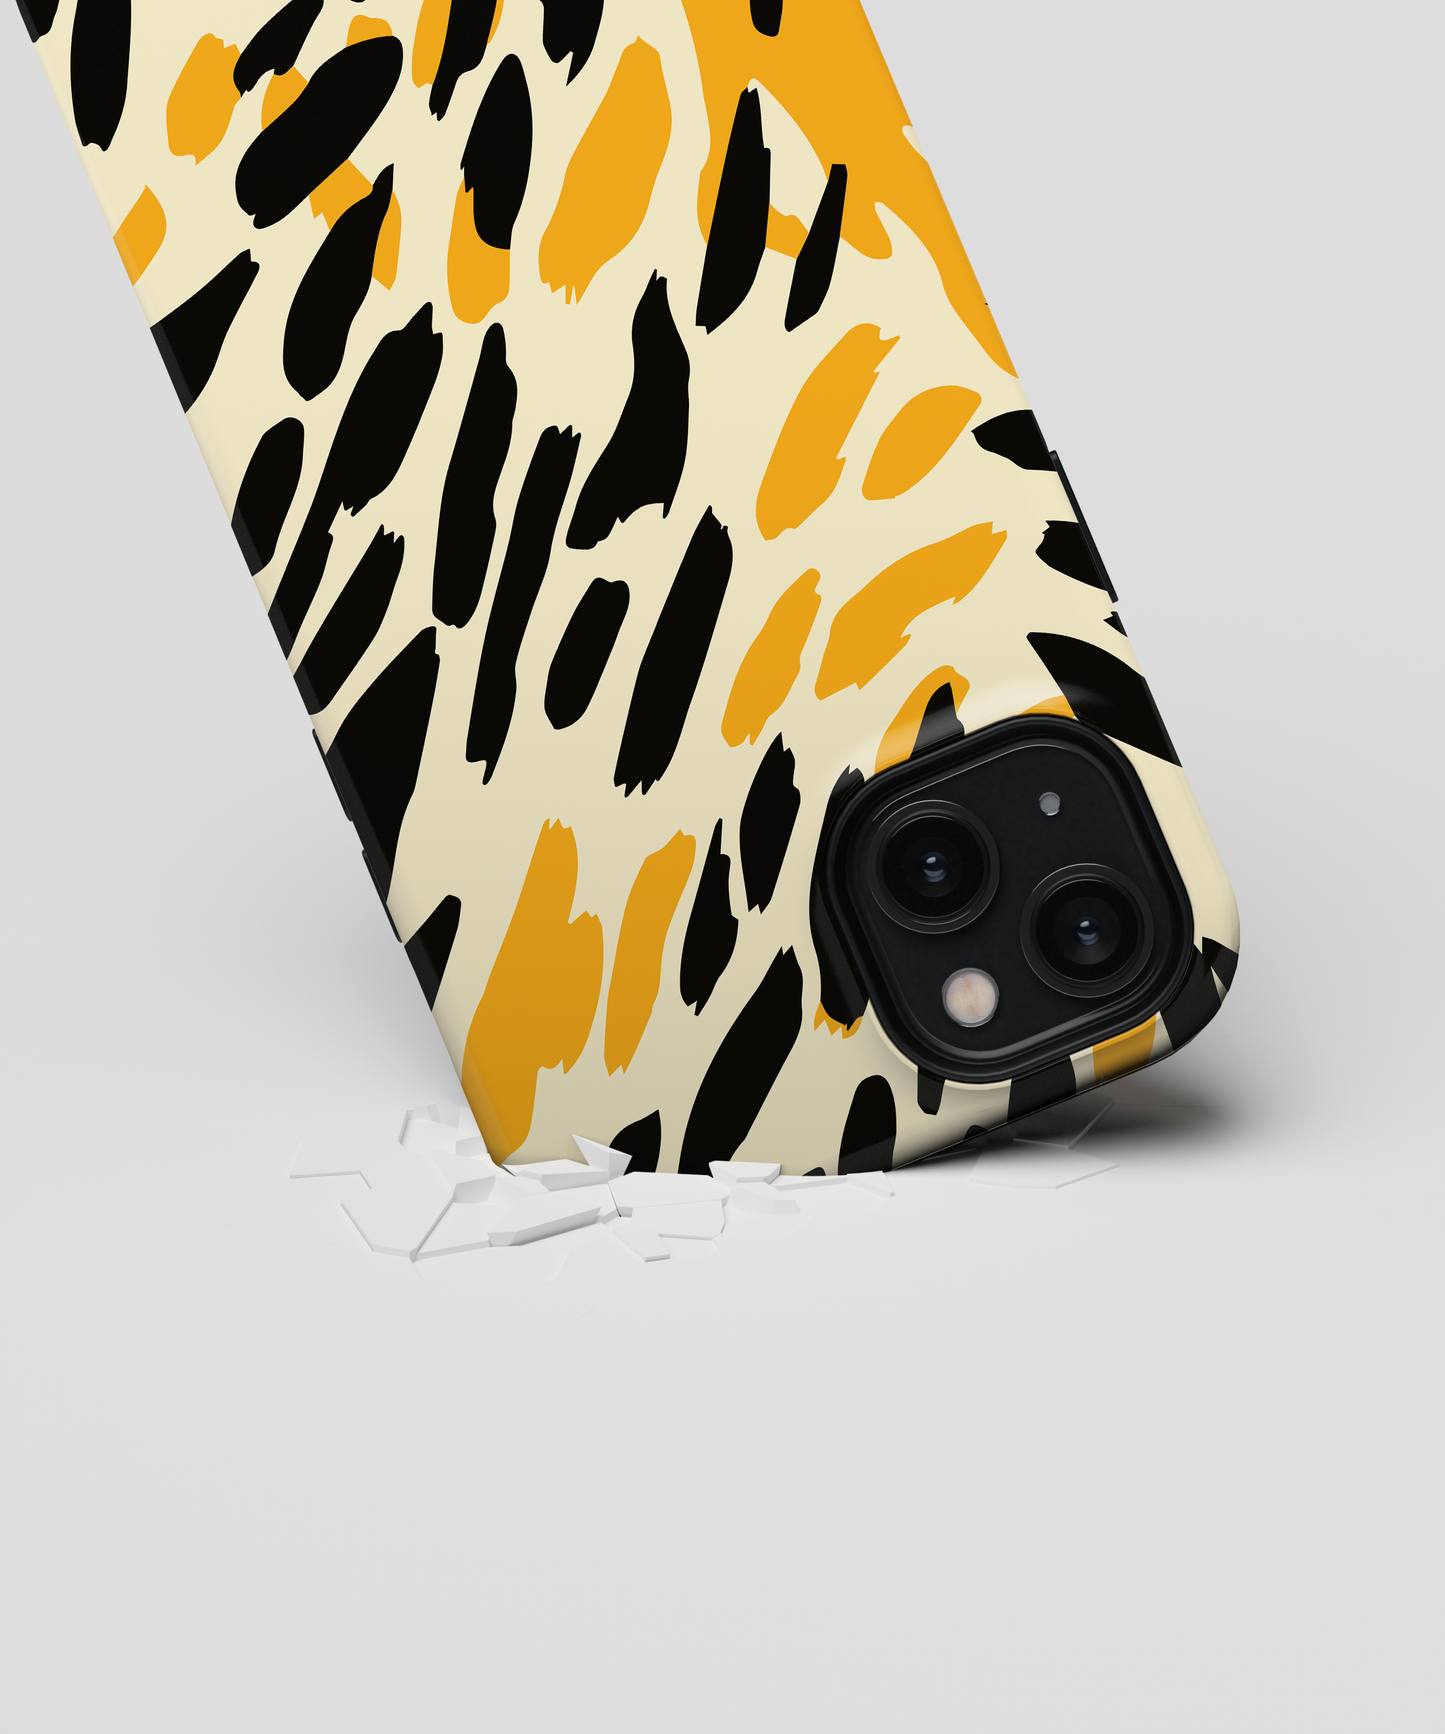 Cheetah - Samsung Galaxy A71 4G phone case